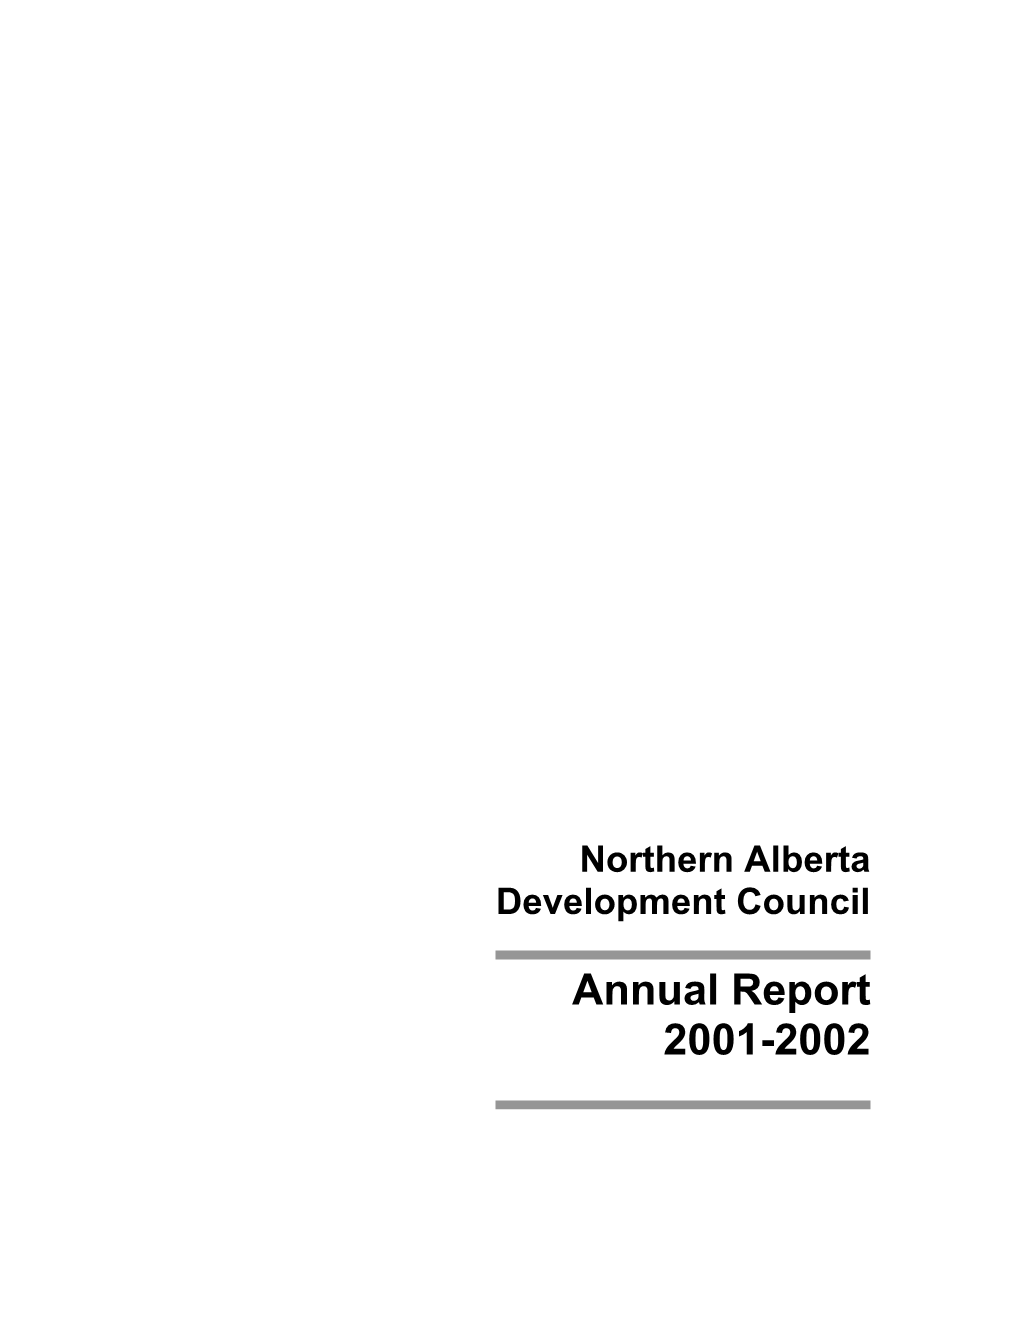 Northern Alberta Development Council Annual Report 2001-2002